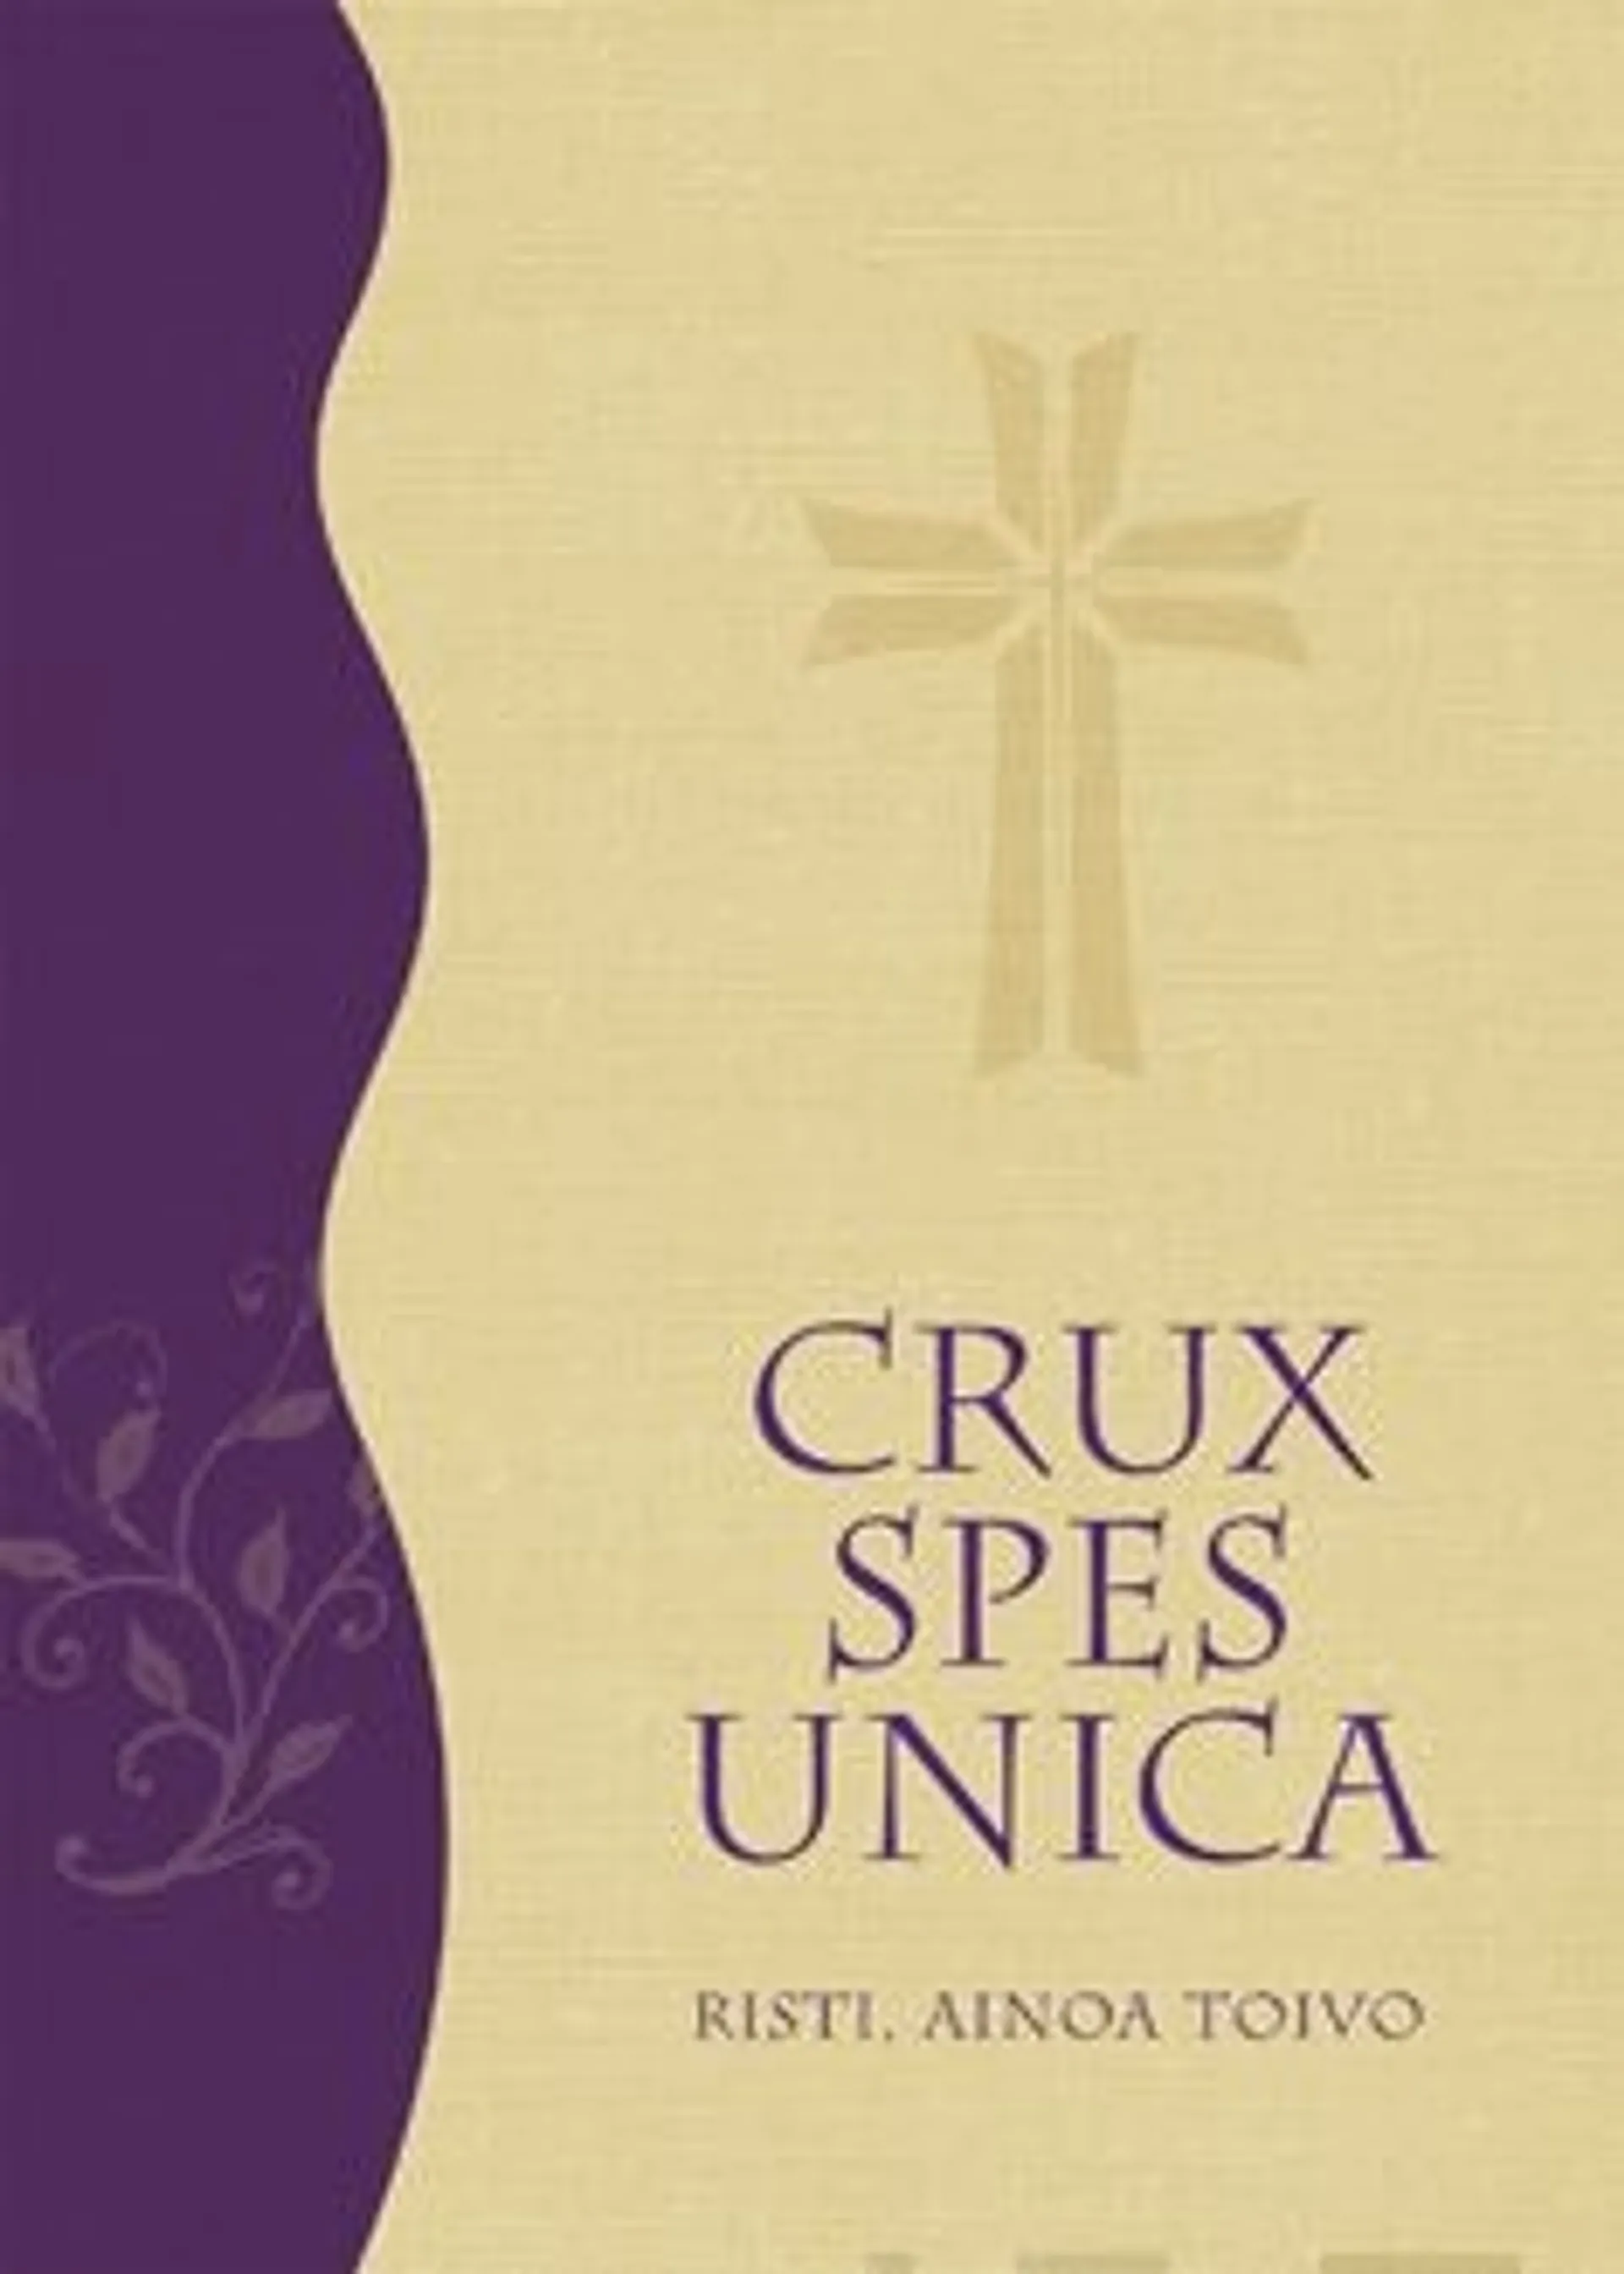 Crux Spex Unica - Risti, ainoa toivo